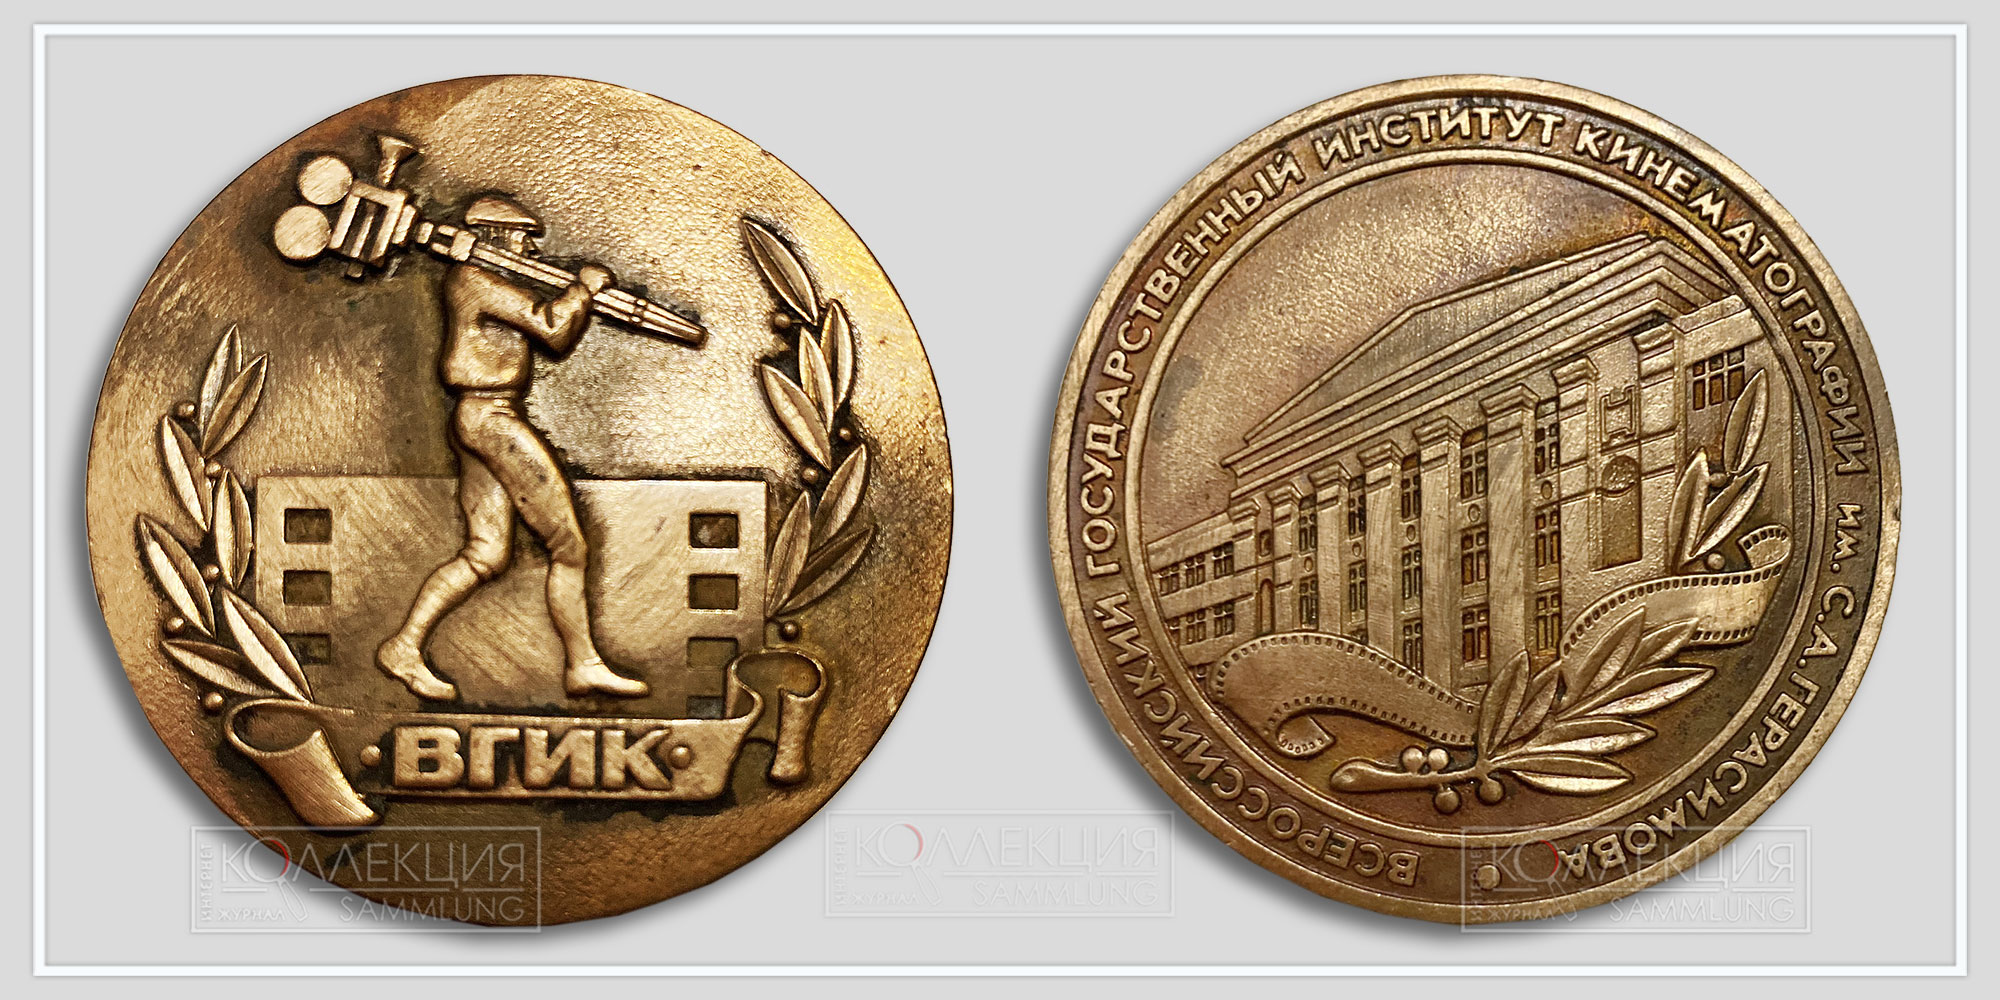 Памятная медаль ВГИК из металла 2004 года, которой наградили Леонида Михайловича Платова. На реверсе – тот самый кинооператор по статуэтке работы самого художника